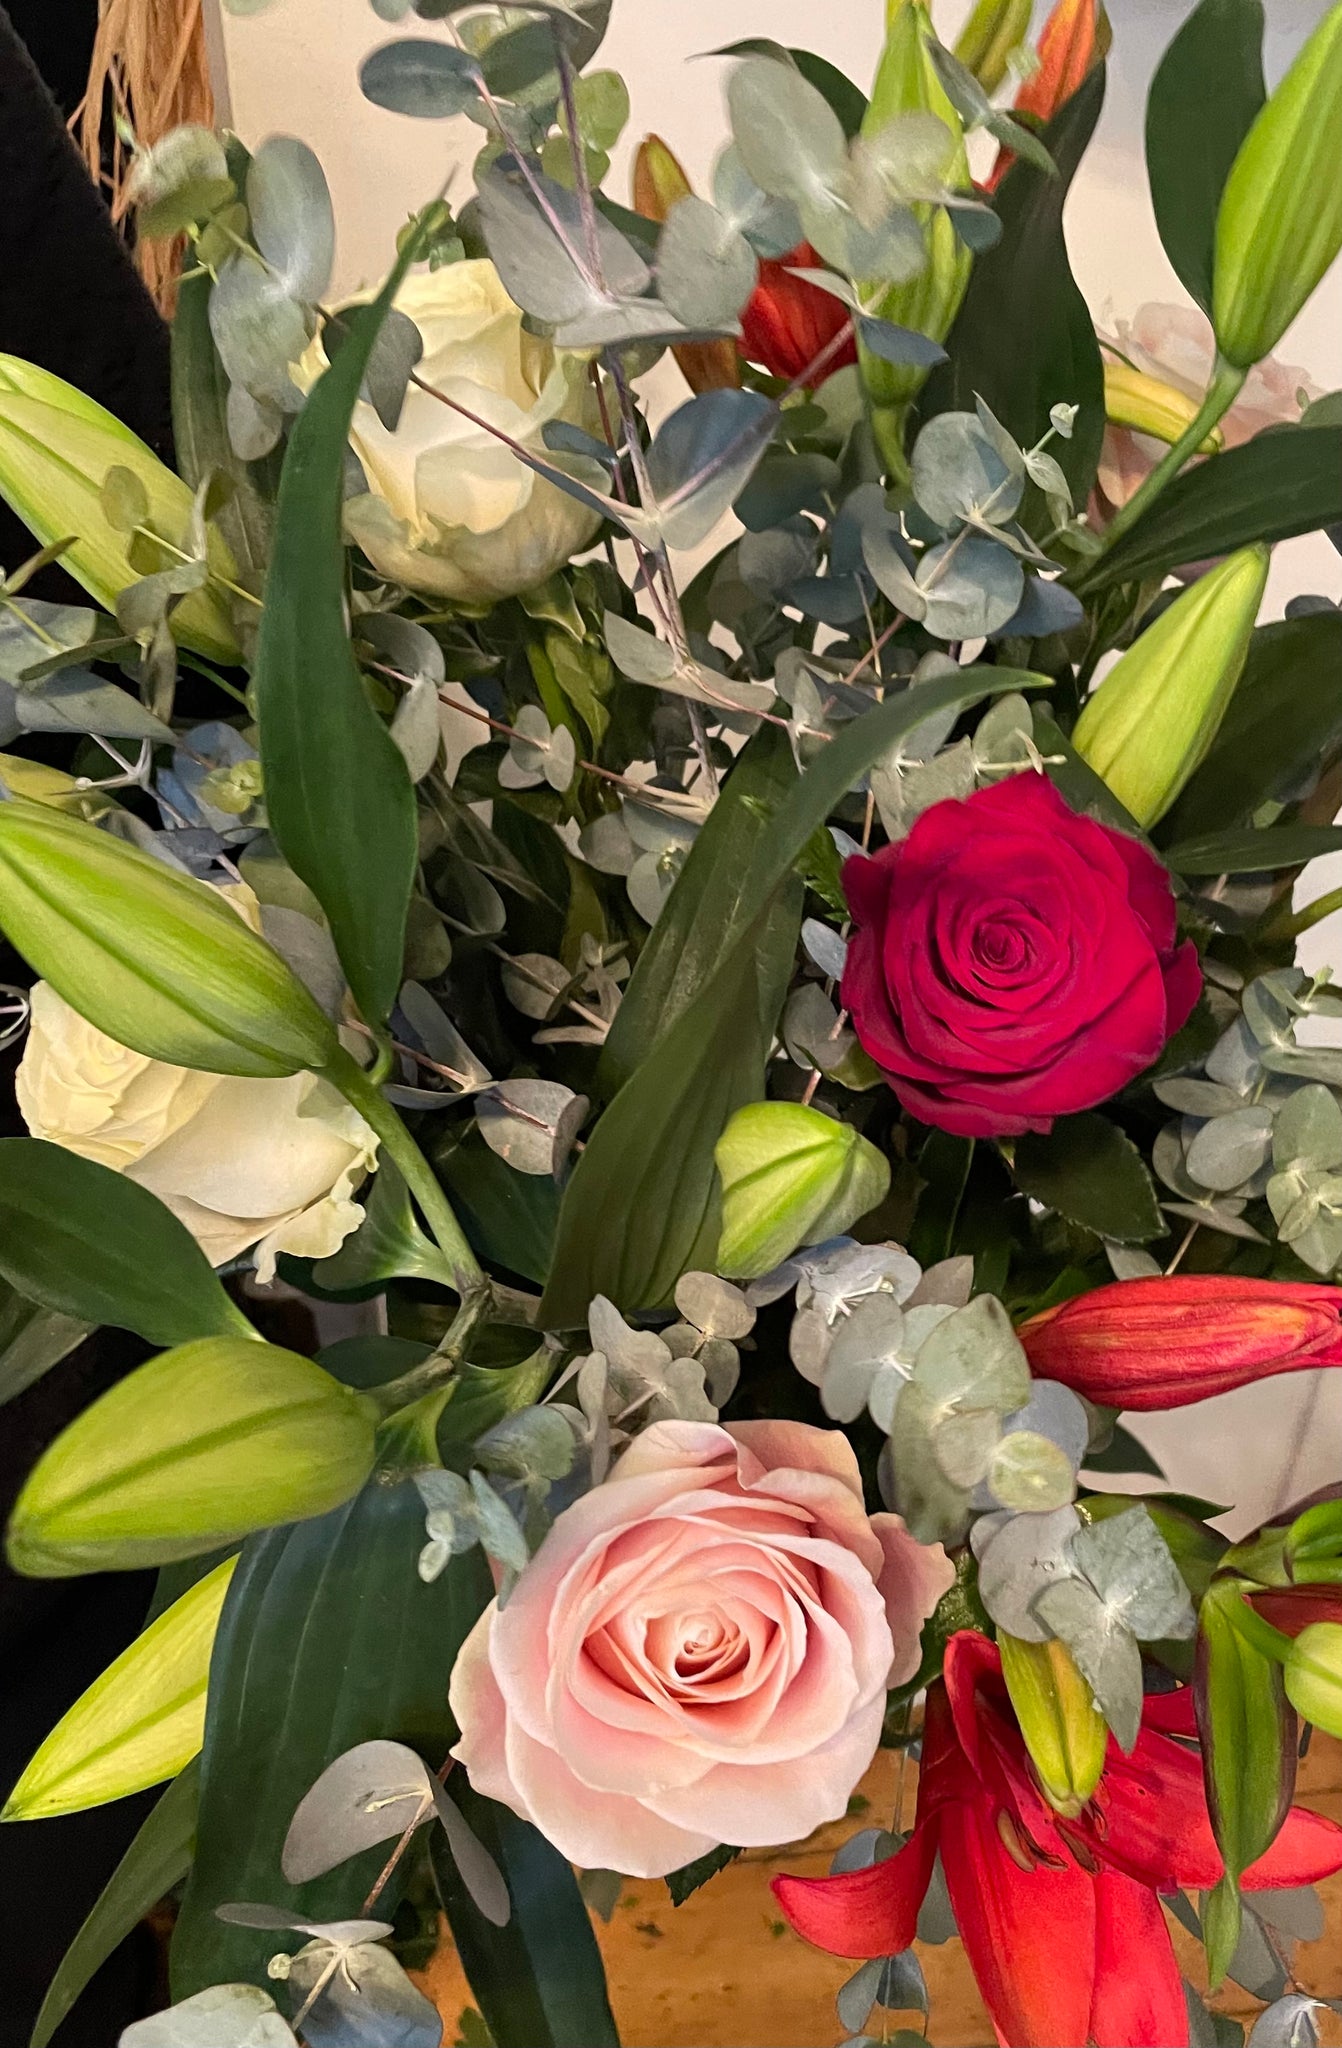 Bespoke Valentine's Hand-Tied Flower Bouquets